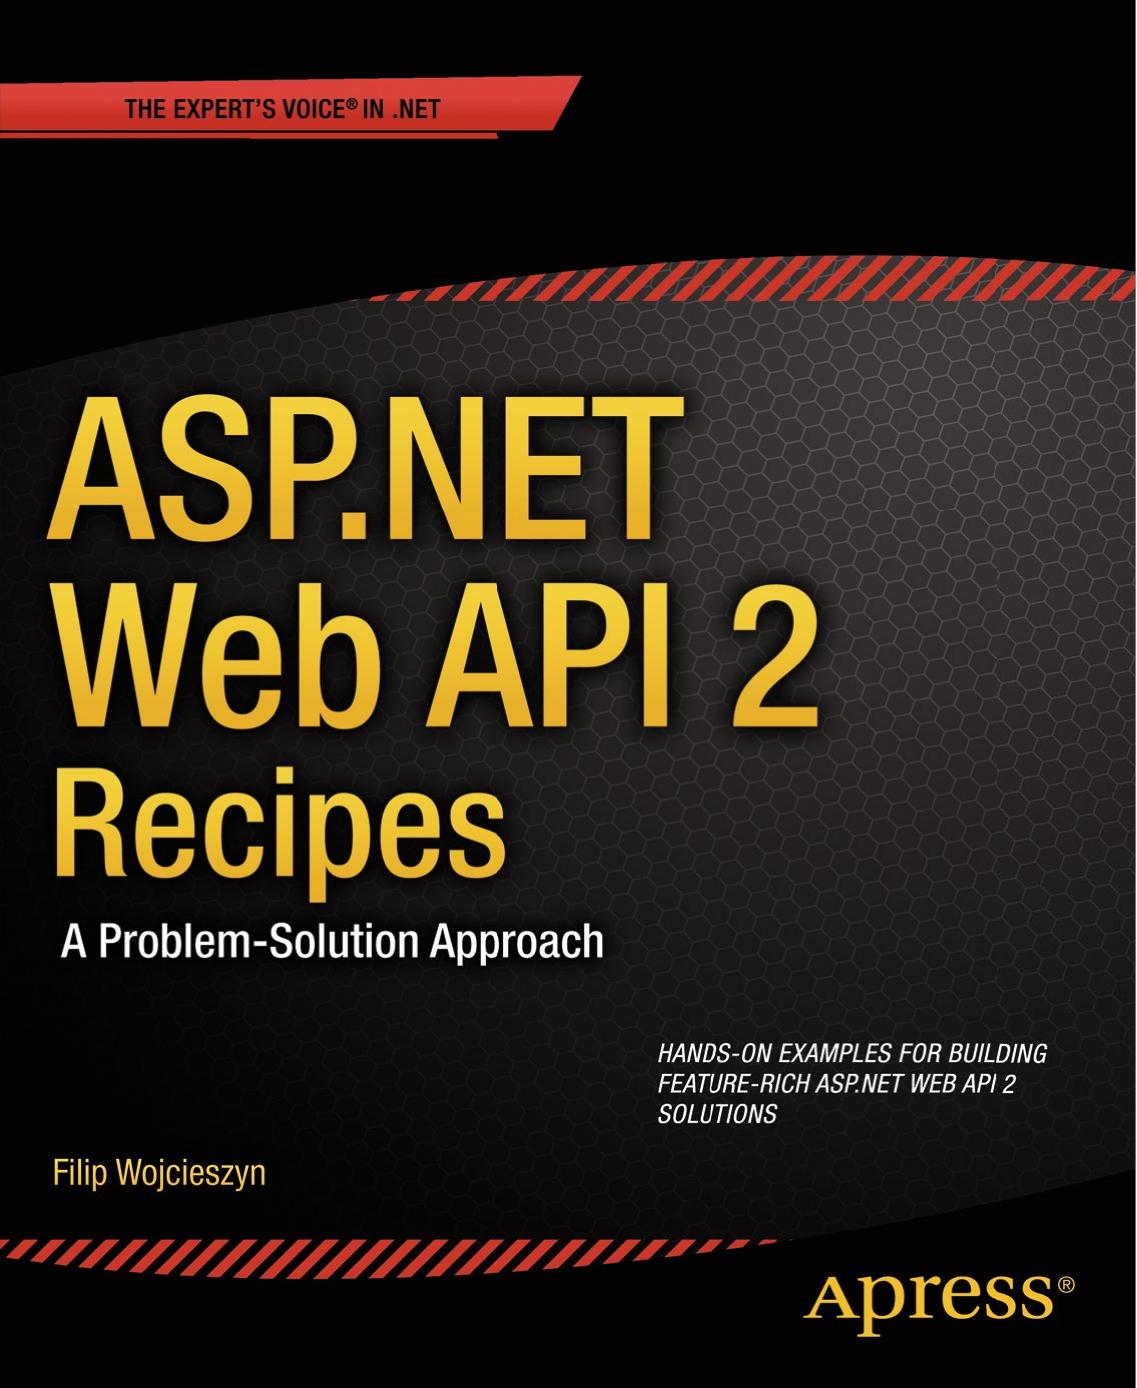 ASP.NET Web API 2 Recipes: A Problem-Solution Approach